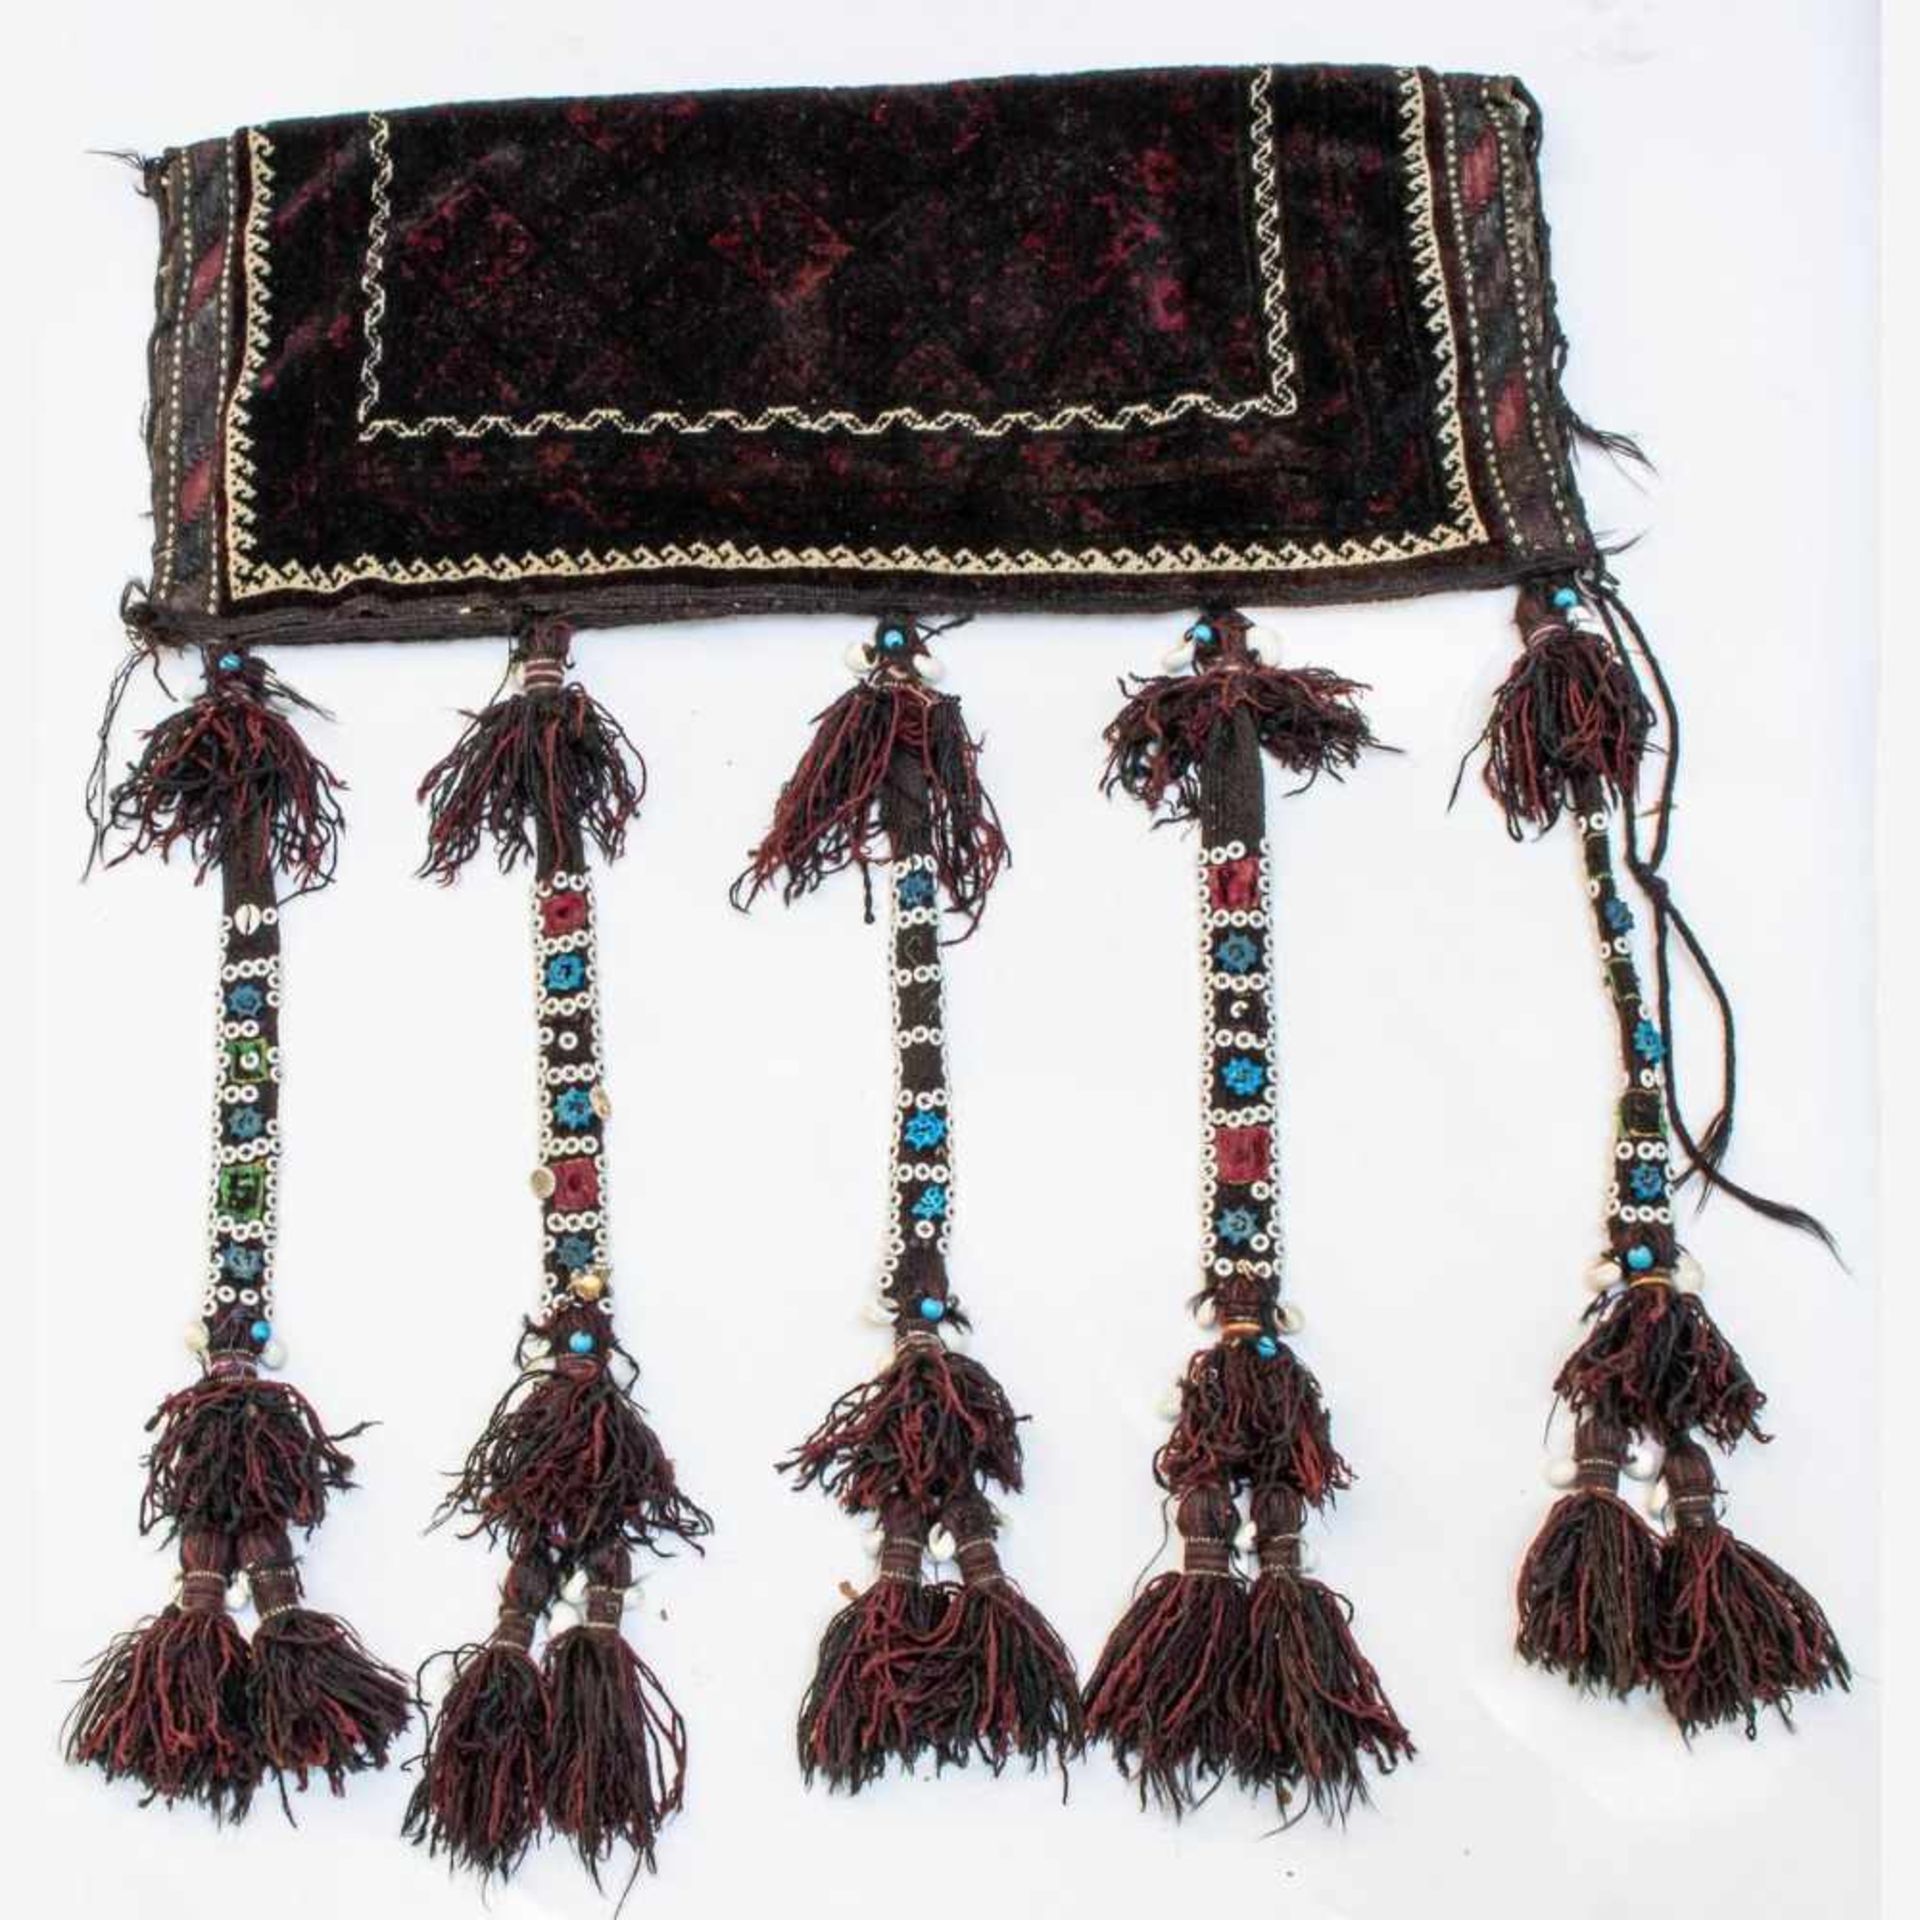 Afghanische Taschenfrontmit langen Fransen-Quastenbändern, besetzt mit Muscheln, Knöpfen und